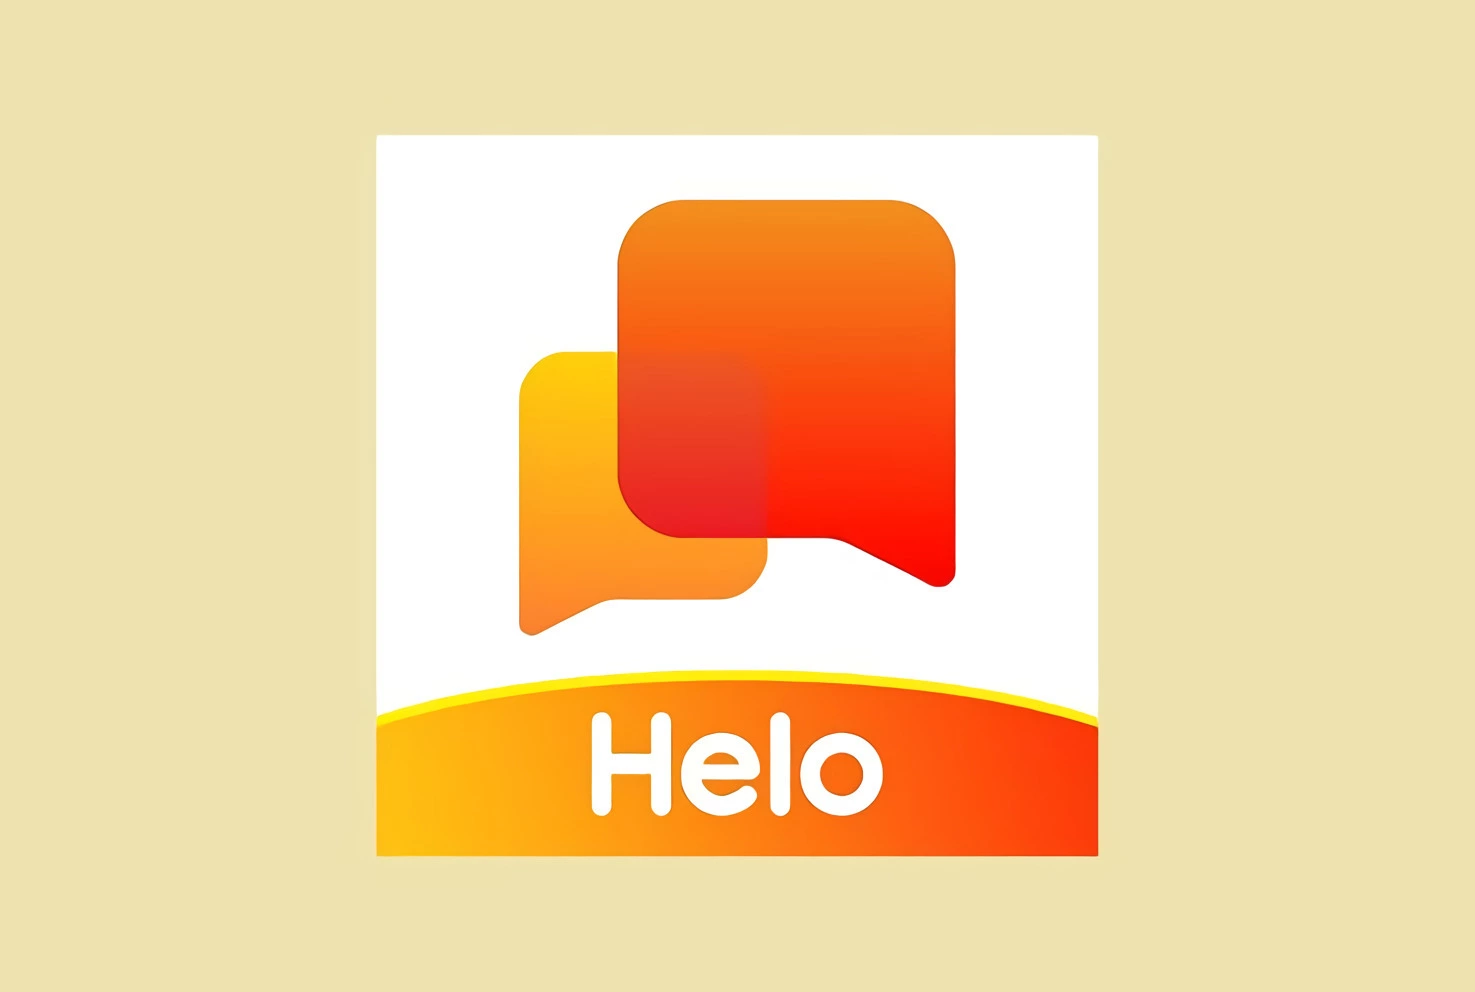 Cara Memasukan Kode Undangan Hello di Android